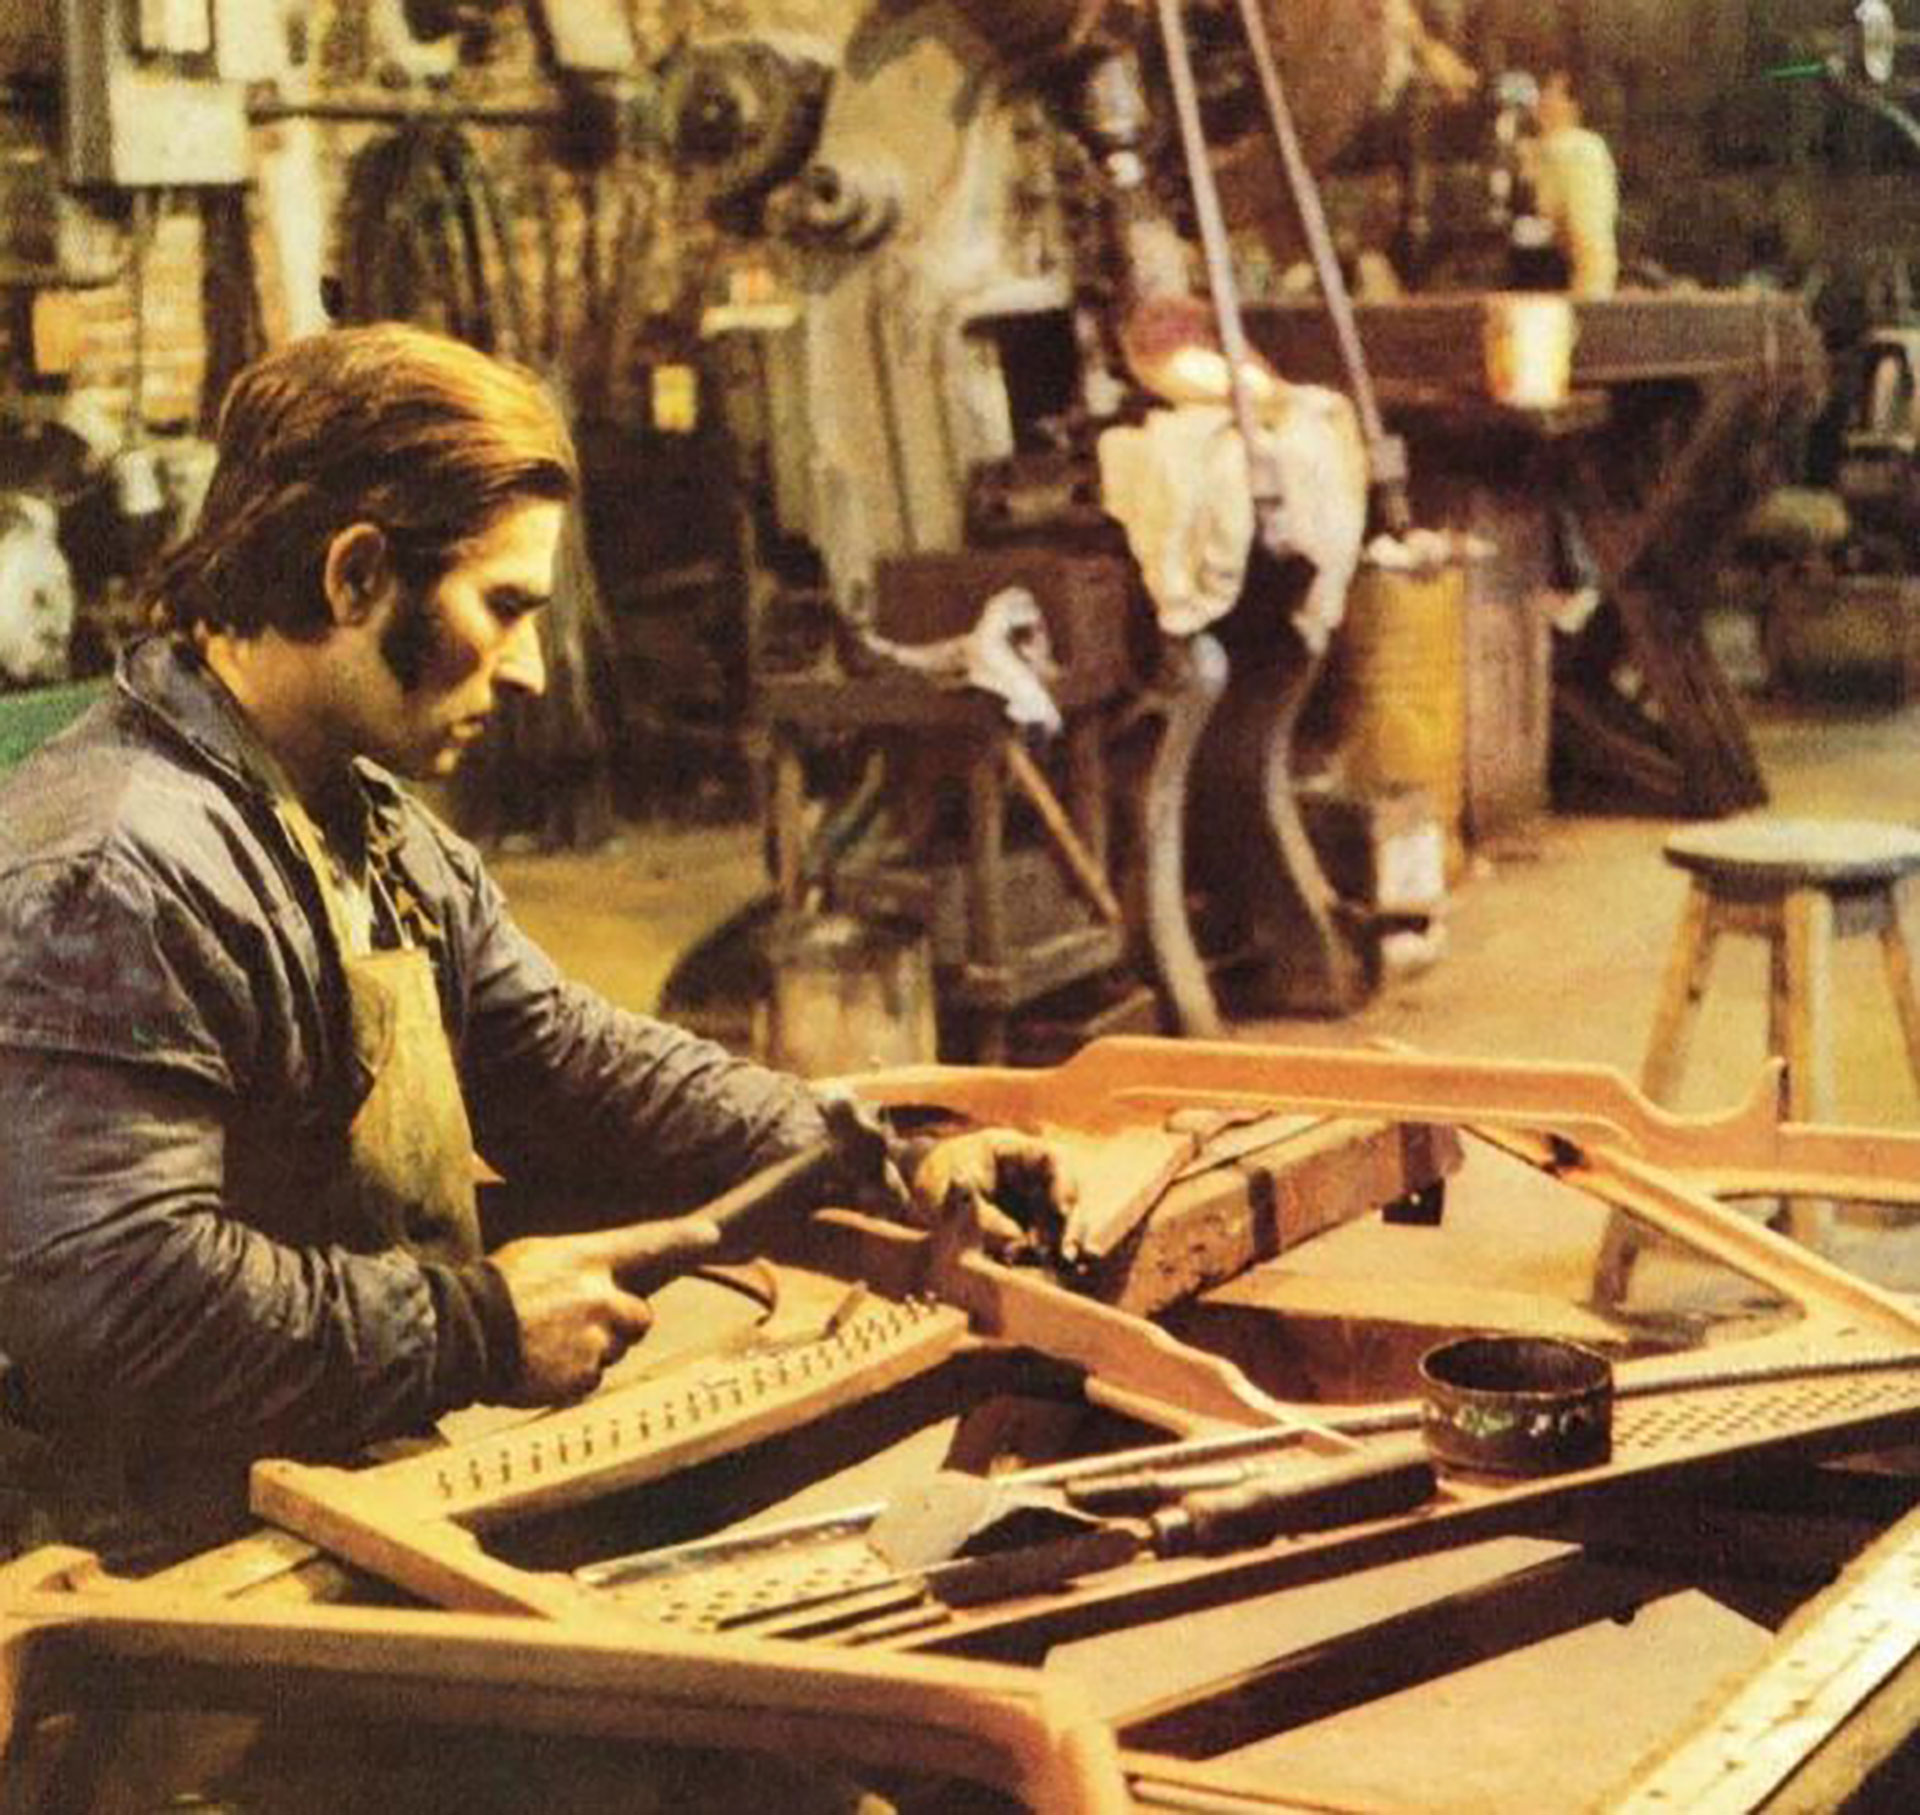 Uno de los operarios de la fábrica. Trabajaban desde carpinteros hasta afinadores (Crédito: Pilar, un pueblo y sus pianos, Historias de la Argentina Secreta, 1986)